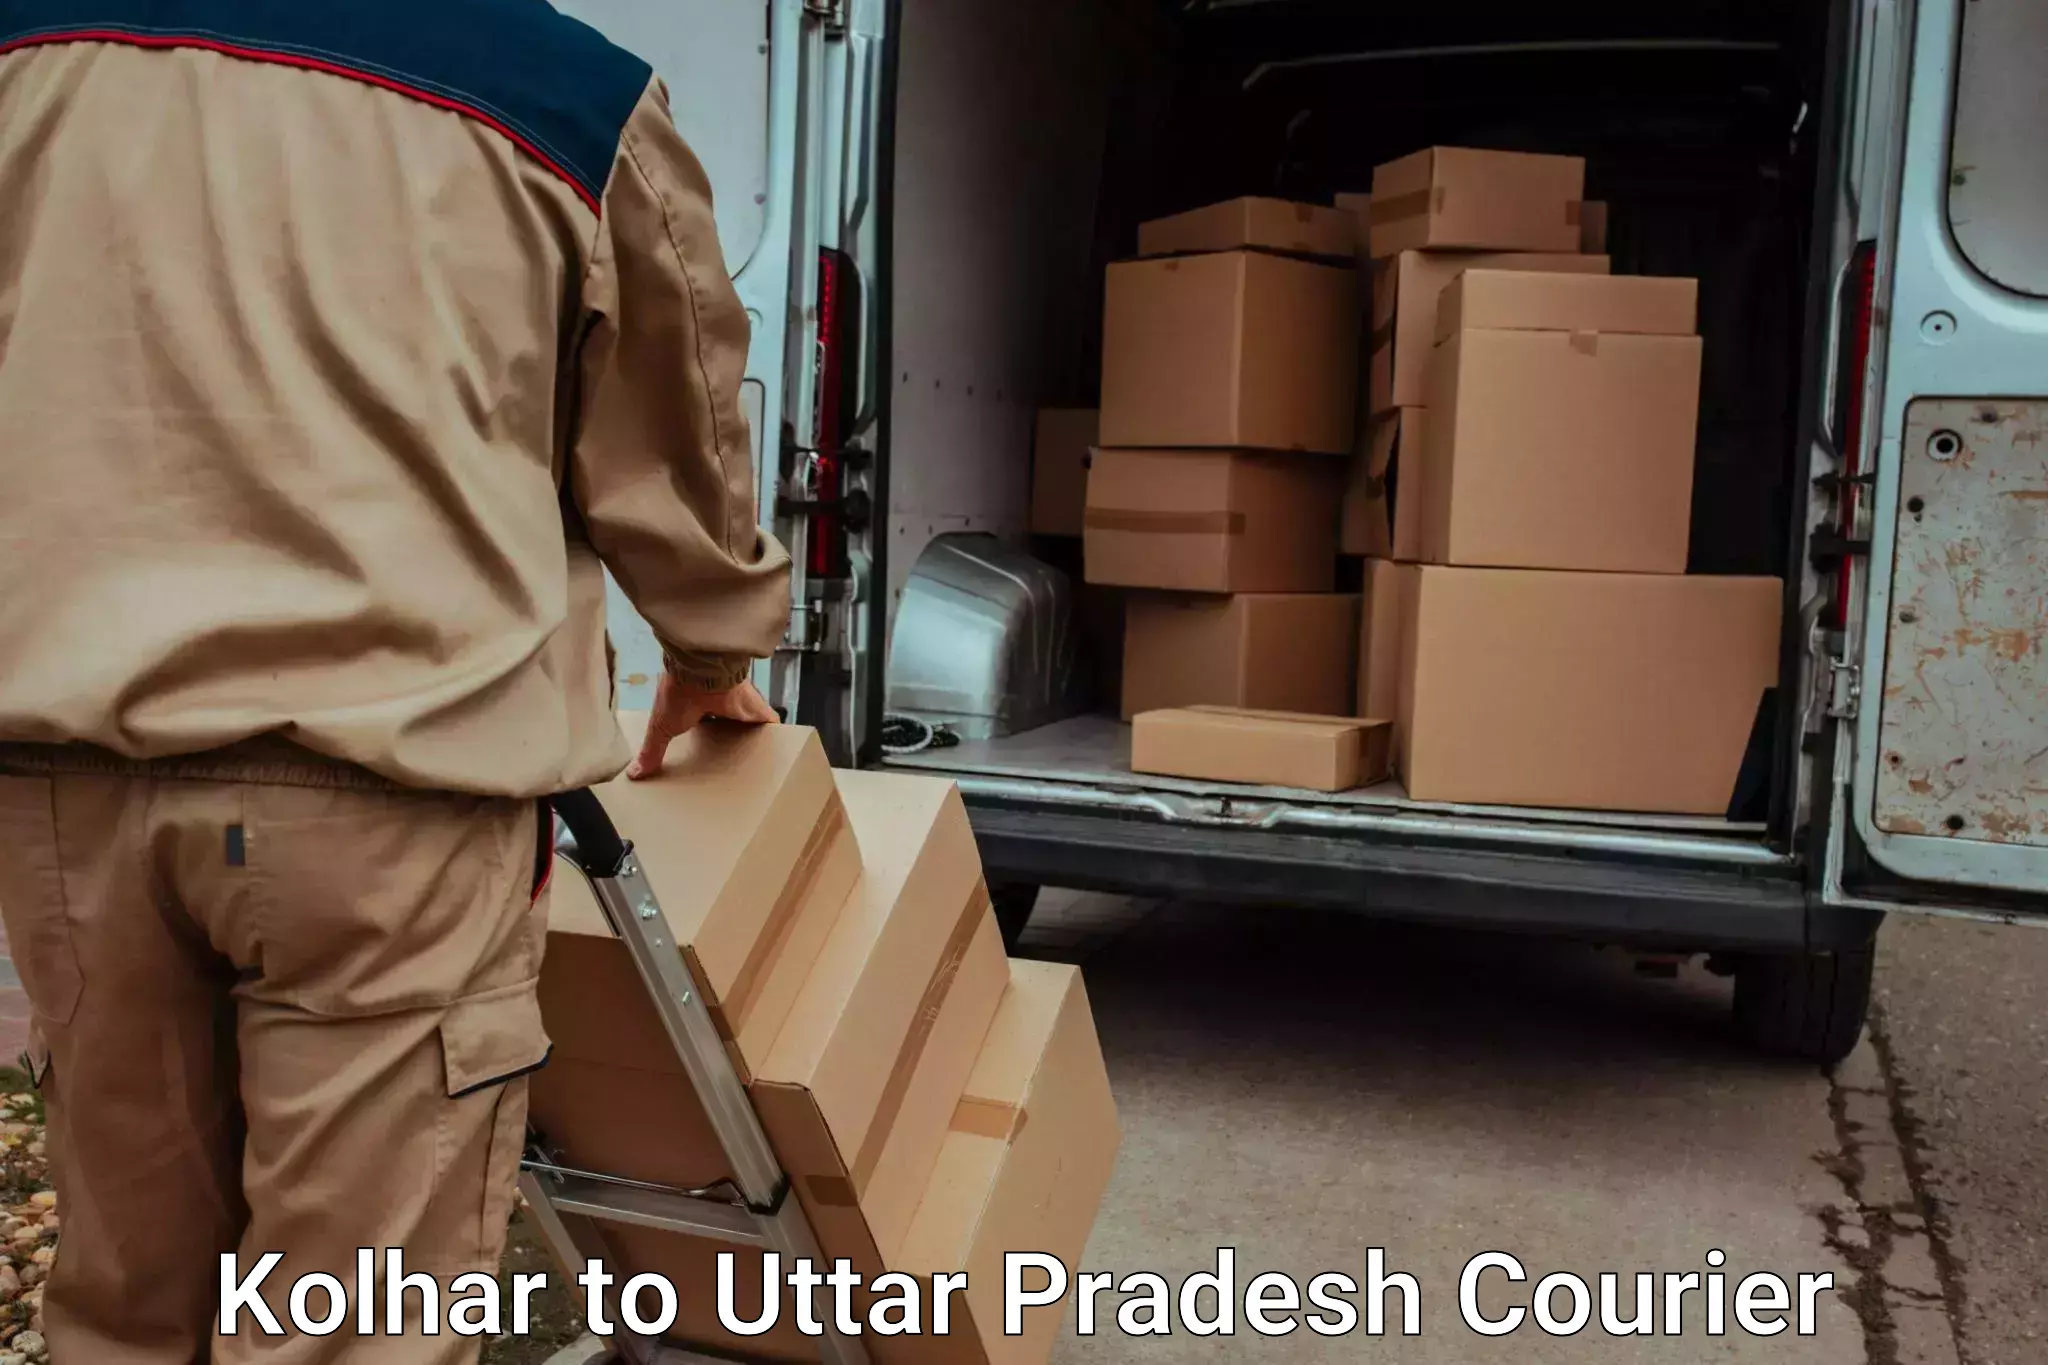 Luggage shipping service Kolhar to Sahatwar